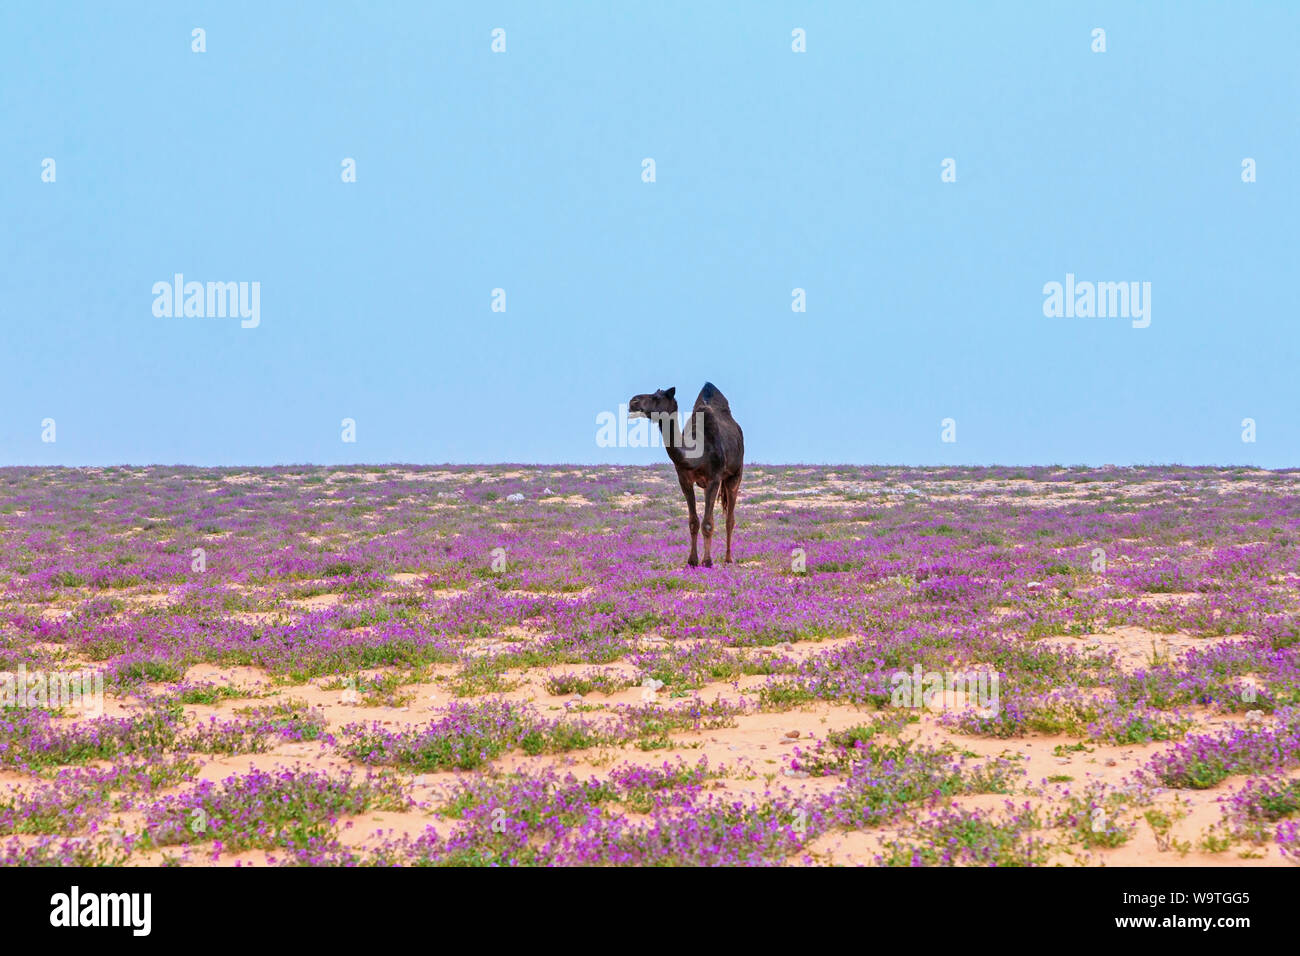 Kamel in der Wüste, Riad, Saudi-Arabien Stockfoto